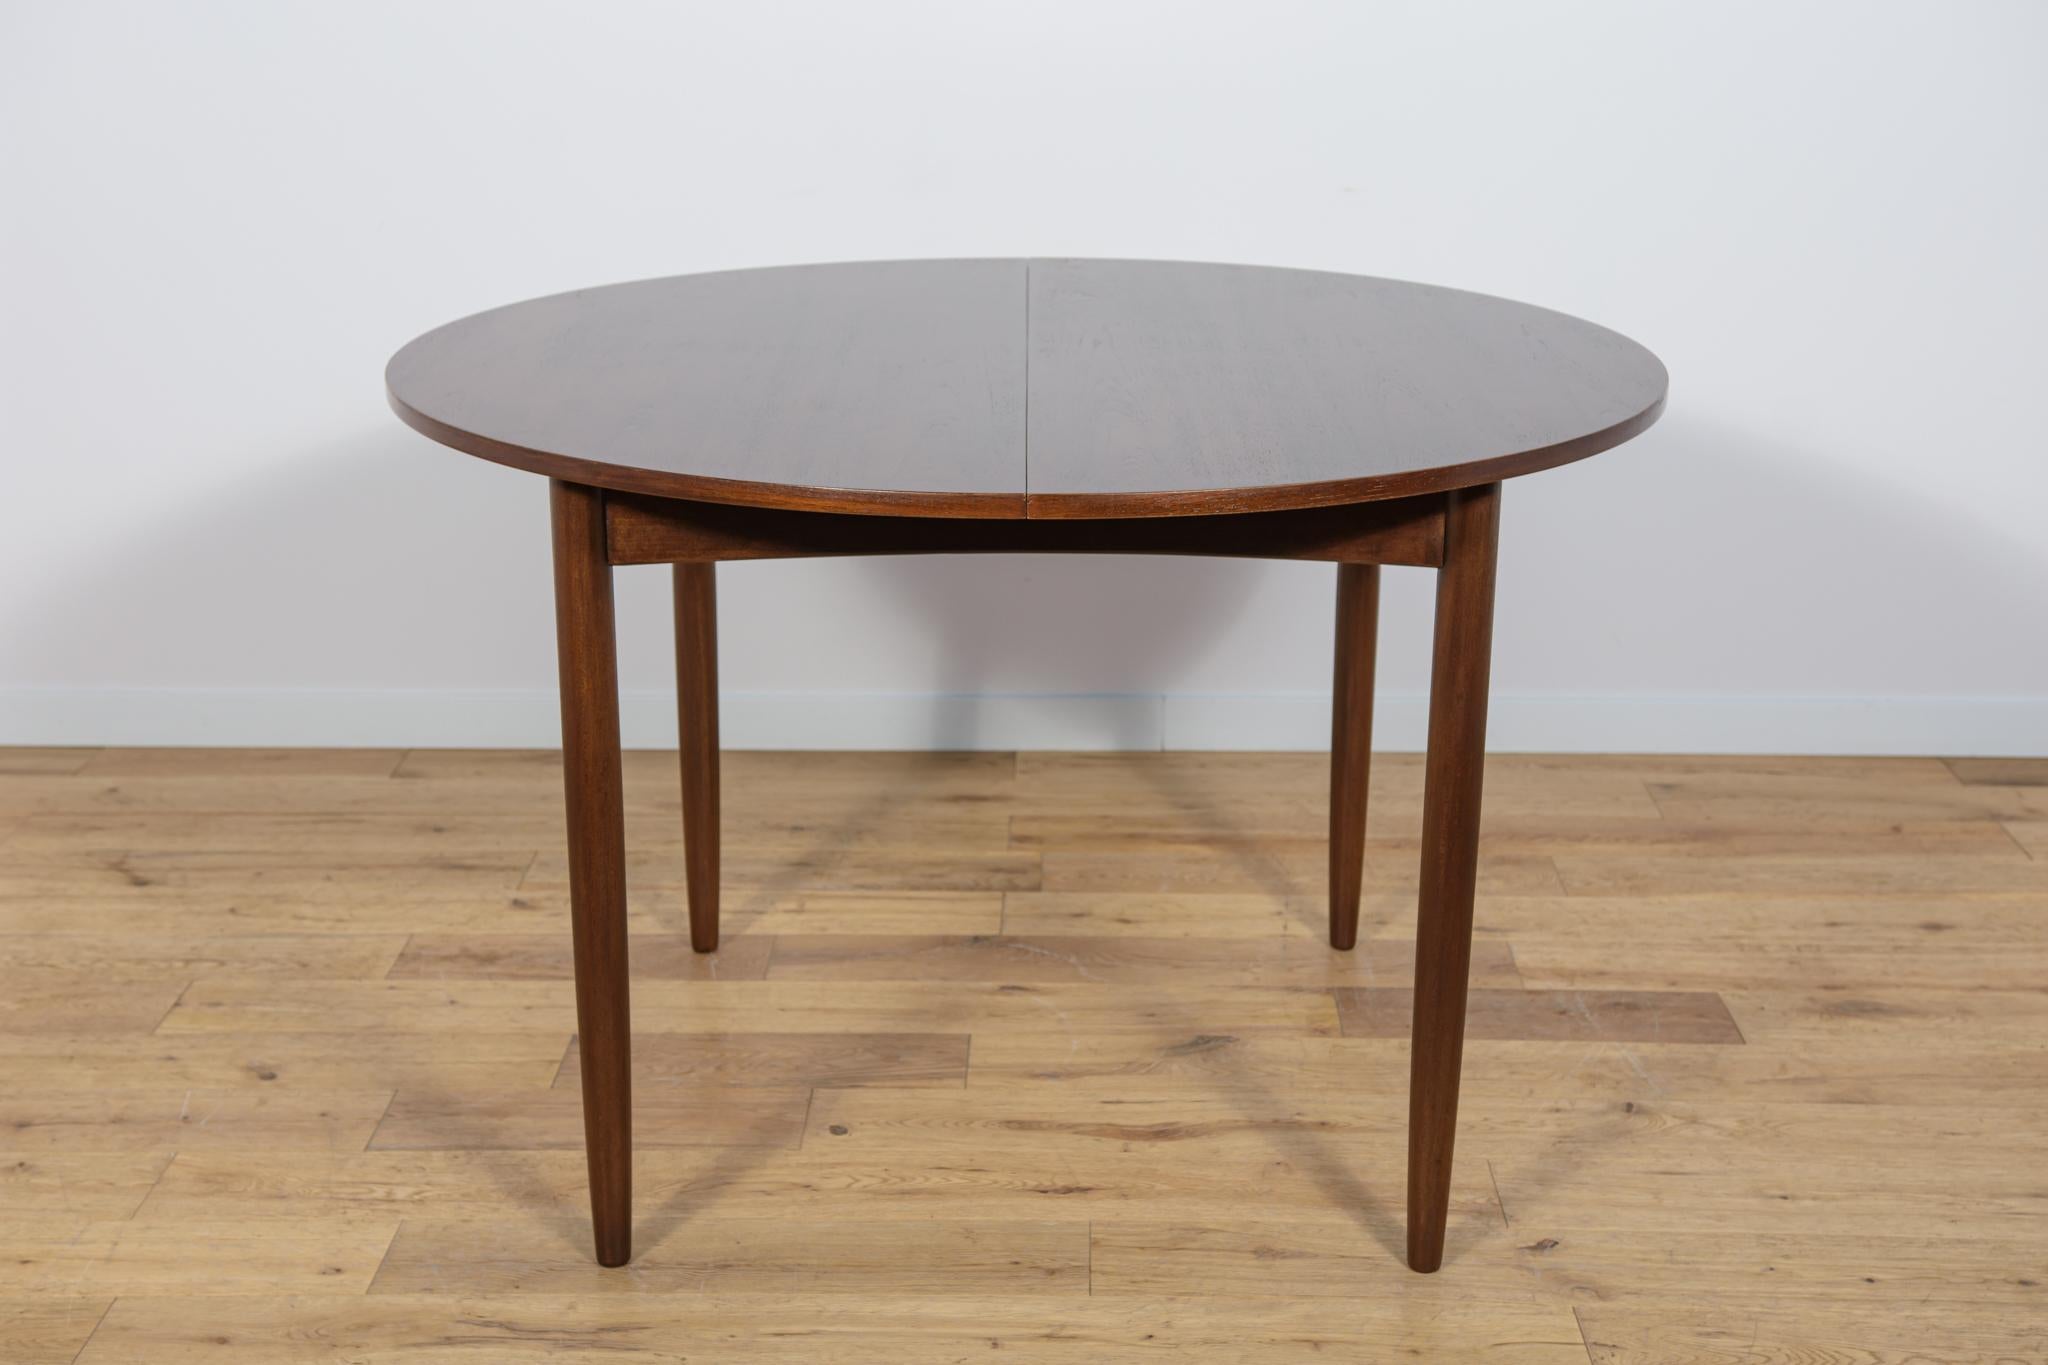 Dieser runde, ausziehbare Esstisch wurde von G-Plan in den 1960er Jahren hergestellt. Teakholz-Elemente von der alten Oberfläche gereinigt und mit einer Eichenbeize gestrichen und mit einem starken Lack versehen. Der Tisch verfügt über einen